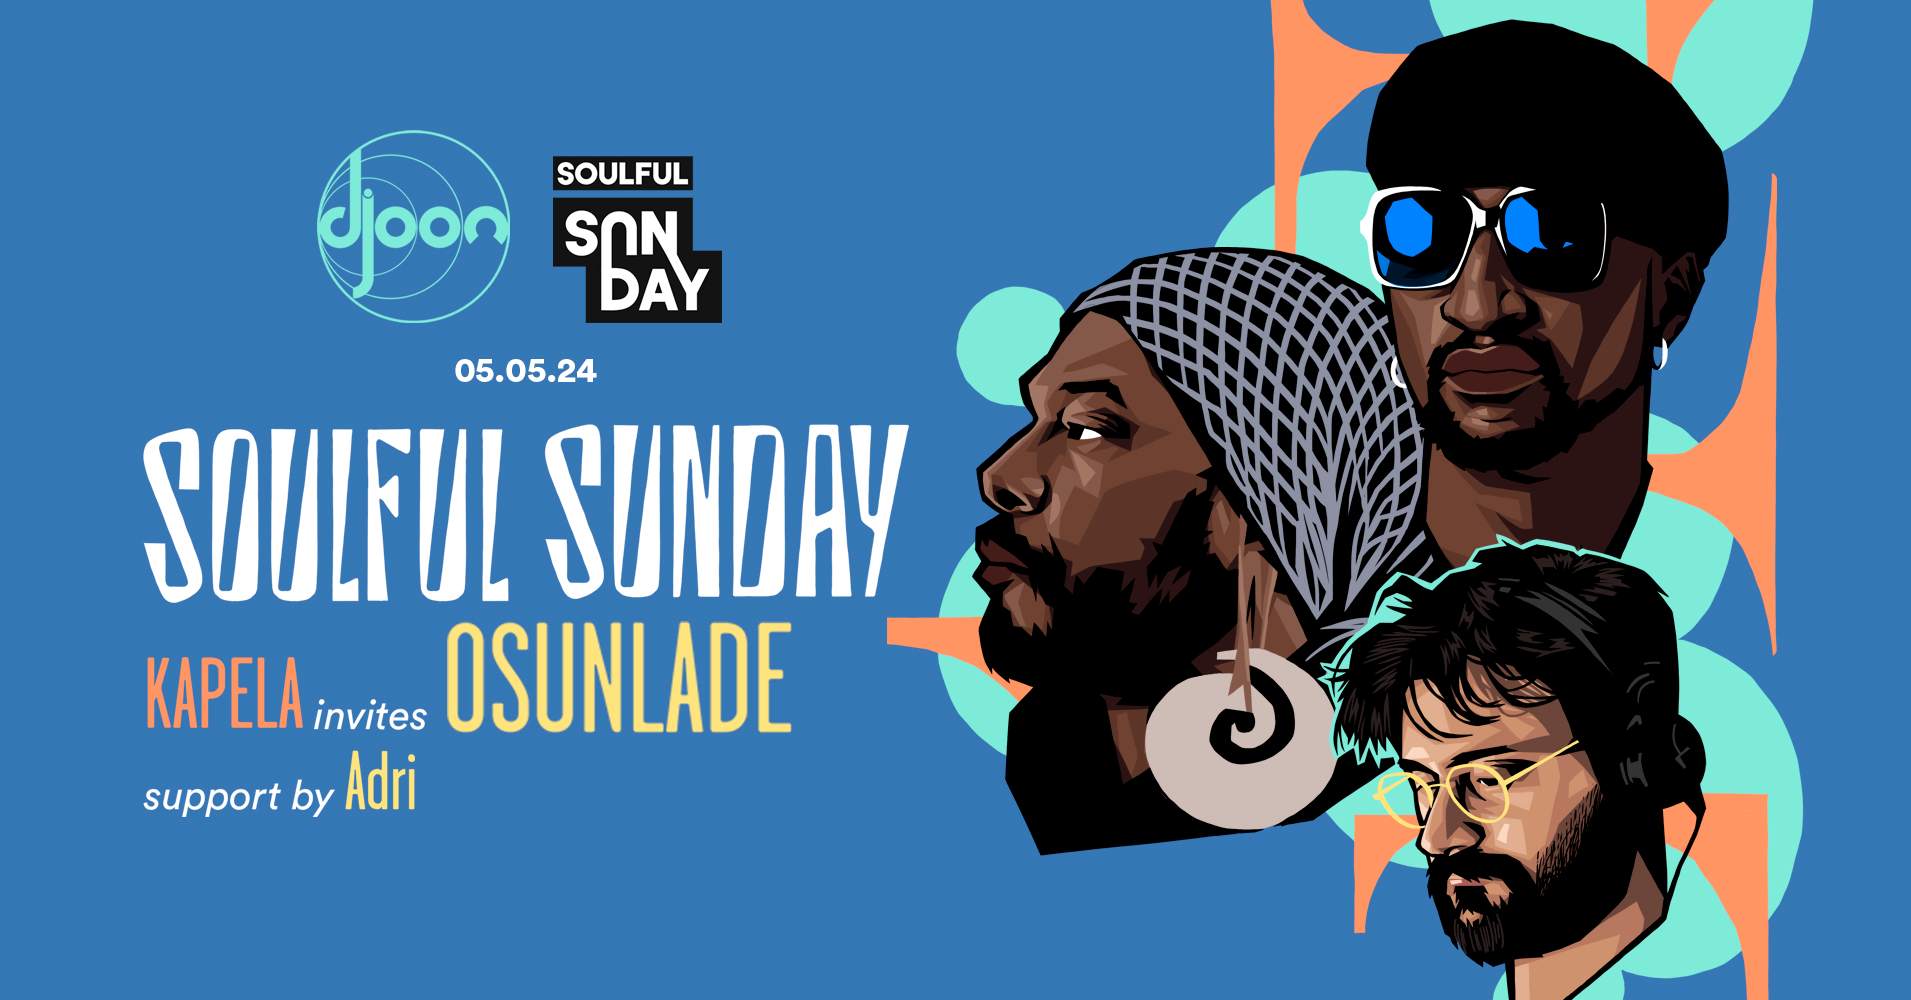 Soulful Sunday: Kapela invites Osunlade support by Adri - Página trasera